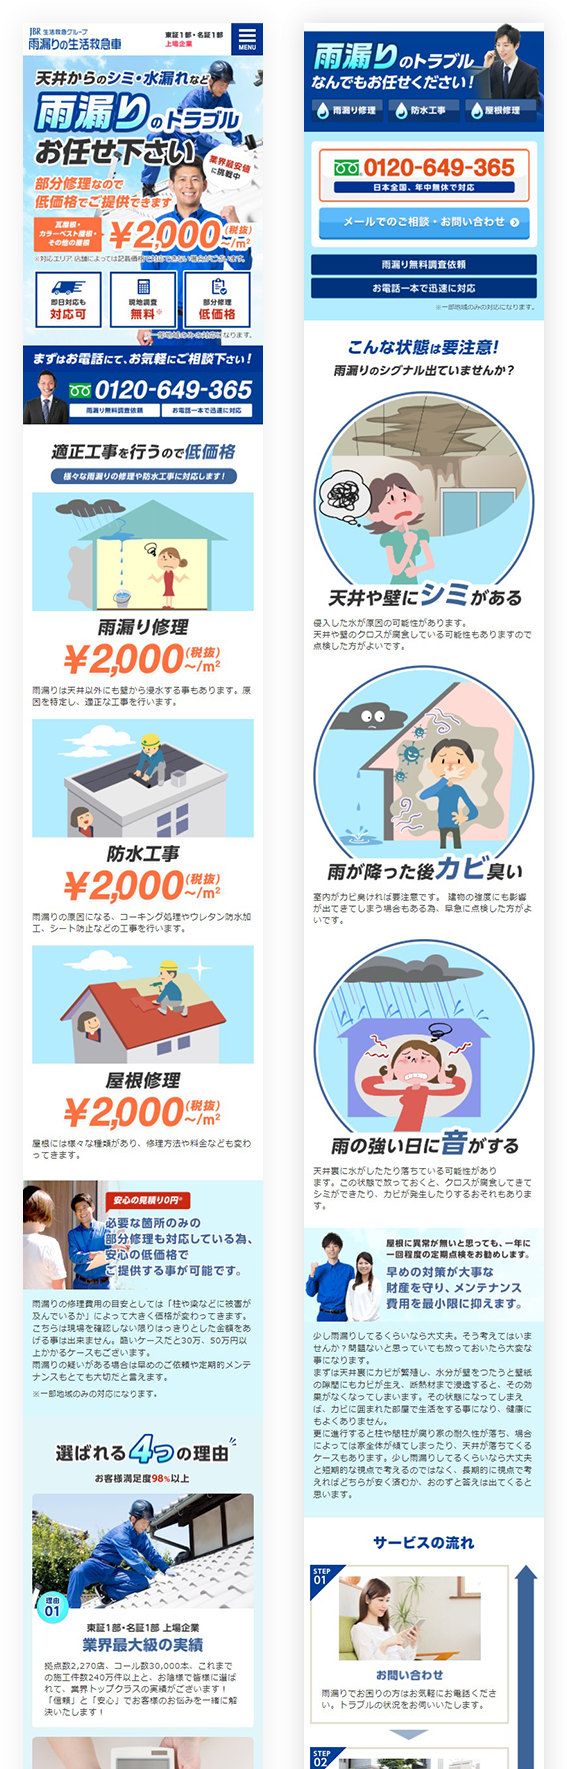 雨漏りの生活救急車 制作実績 大阪のホームページ制作会社 創業19年のエムハンド